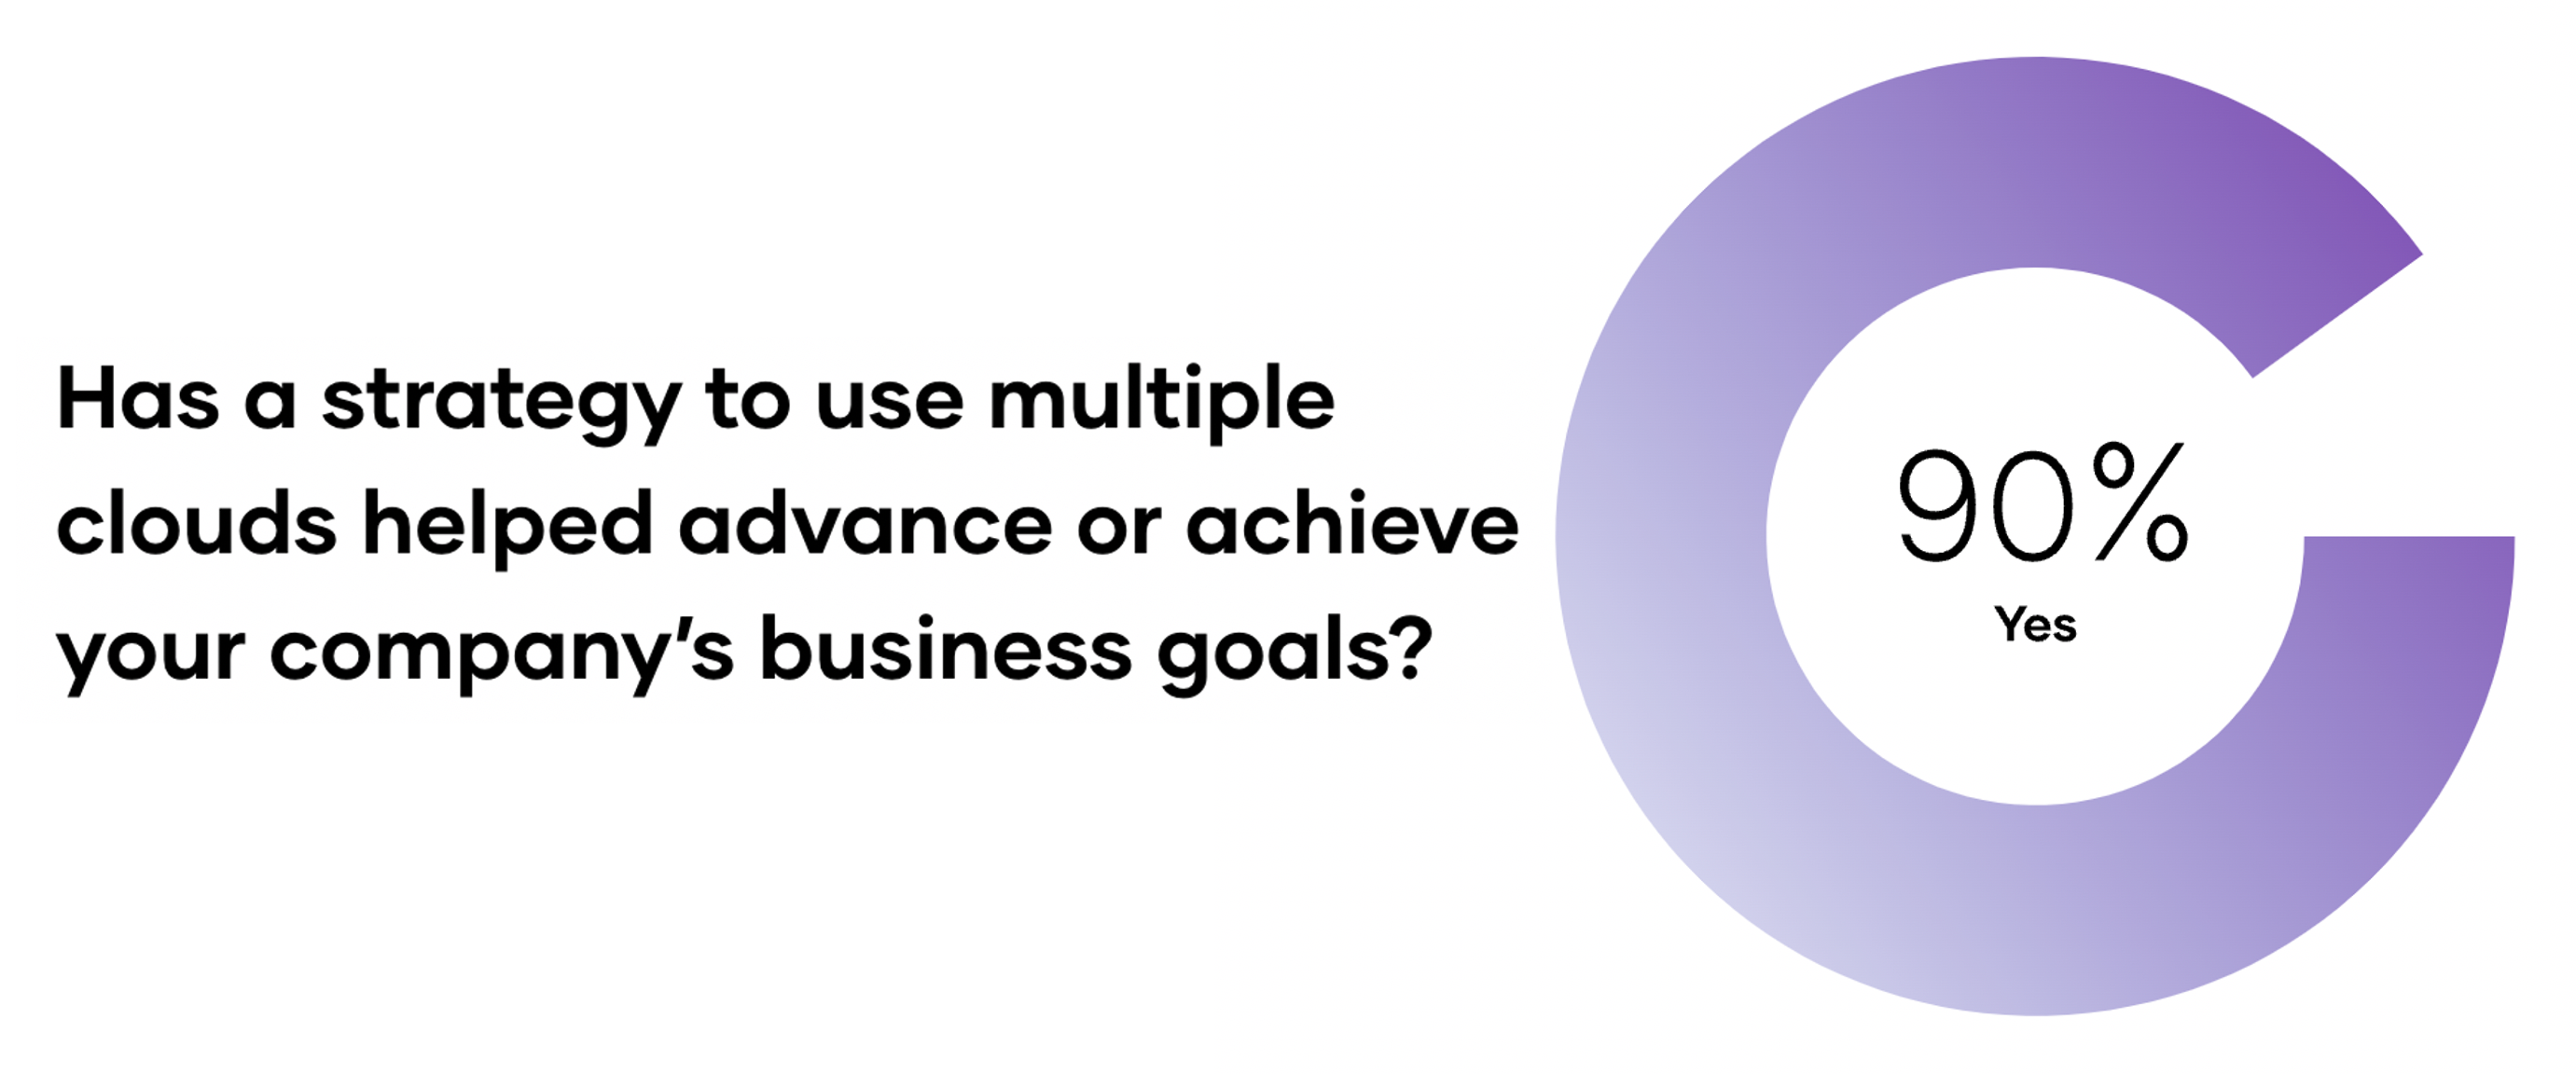 Multi-cloud business goal achievements.